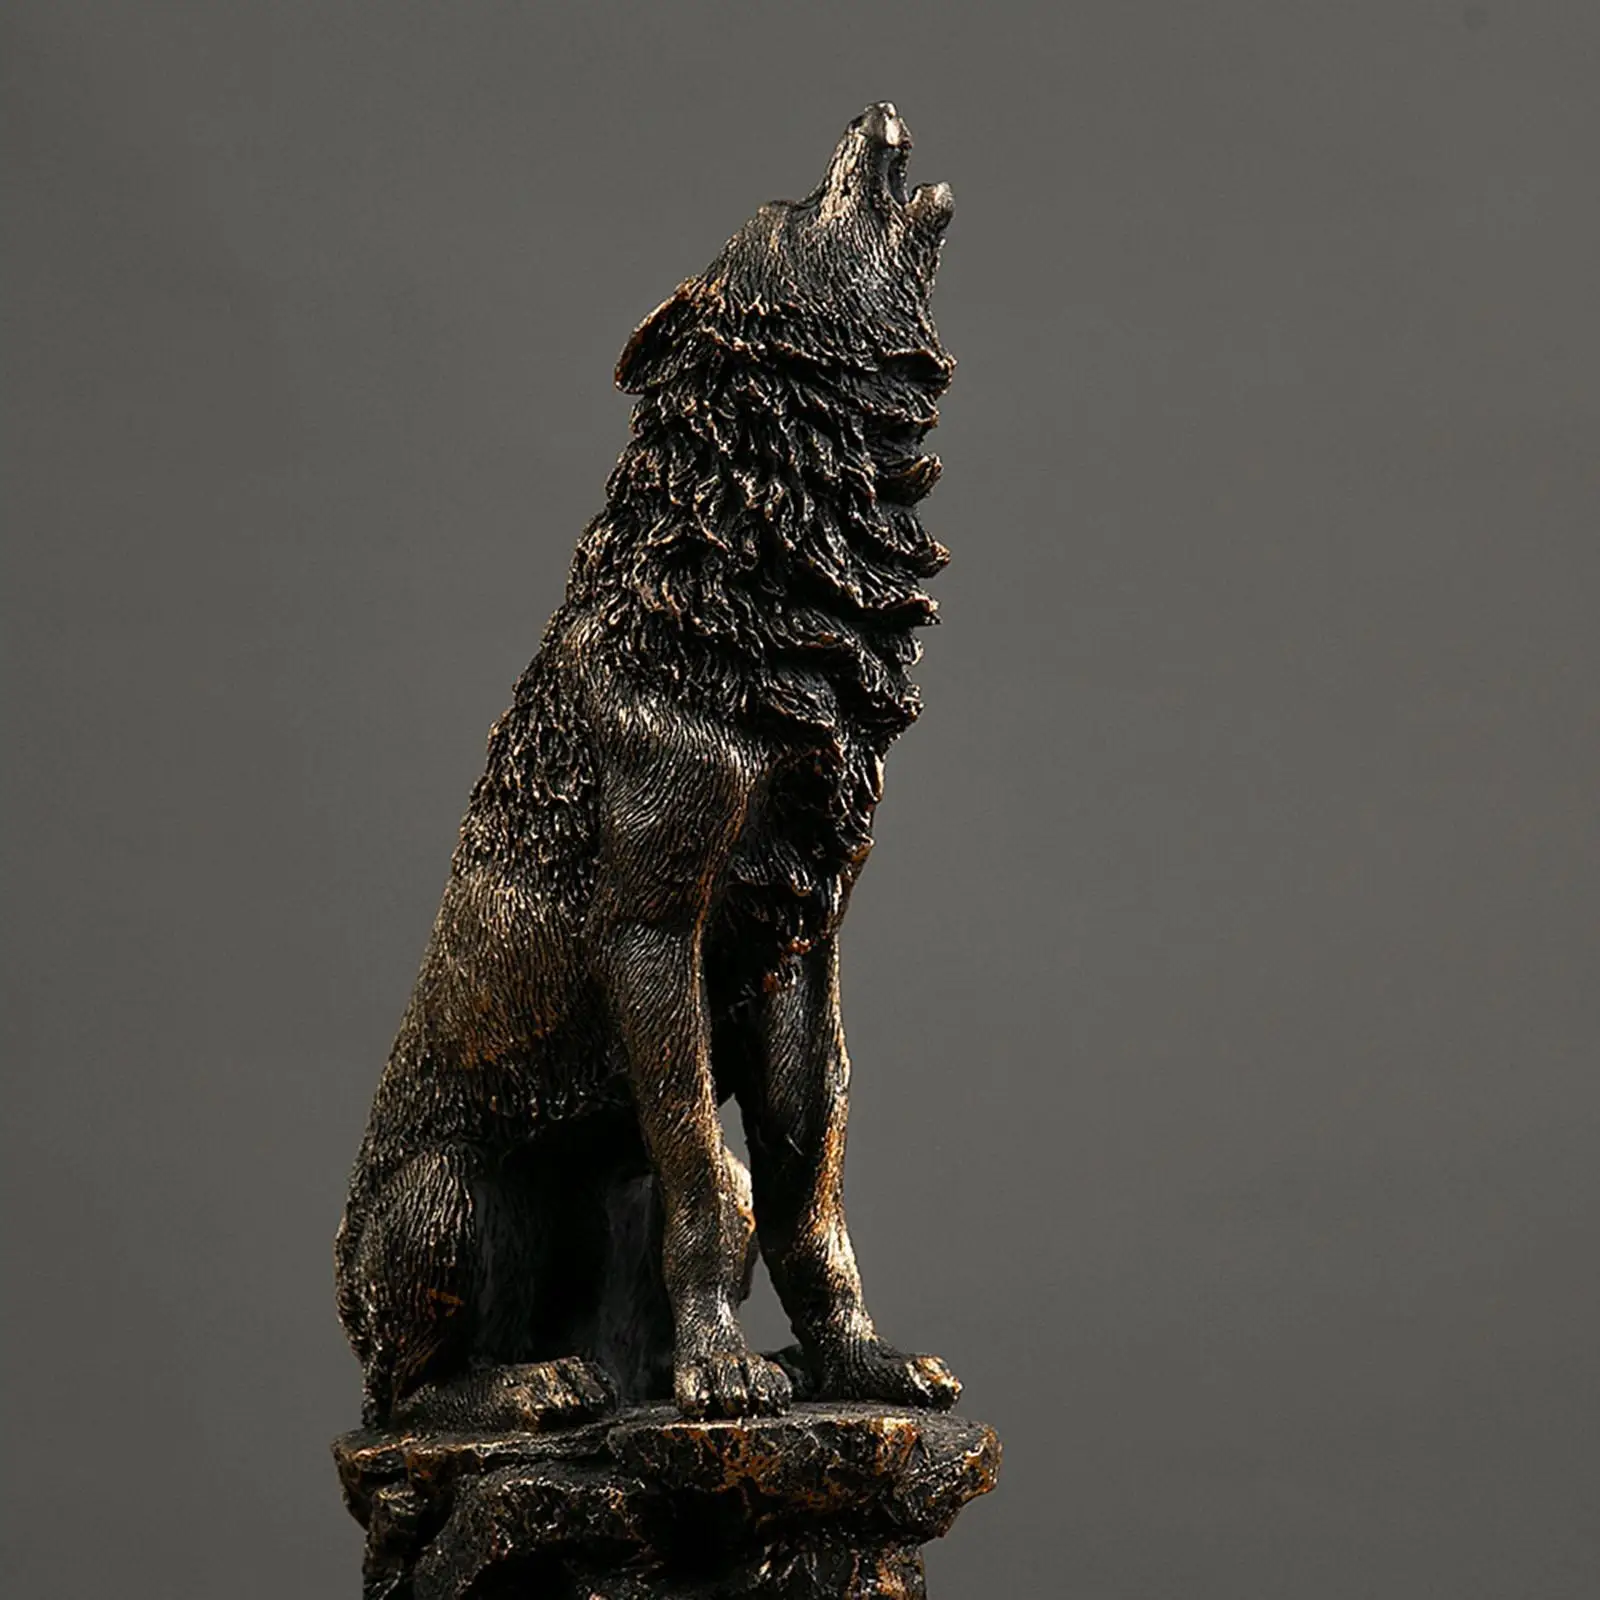 

Фигурка волка из полистоуна, коллекционный столик для книжной полки, офисный шкаф